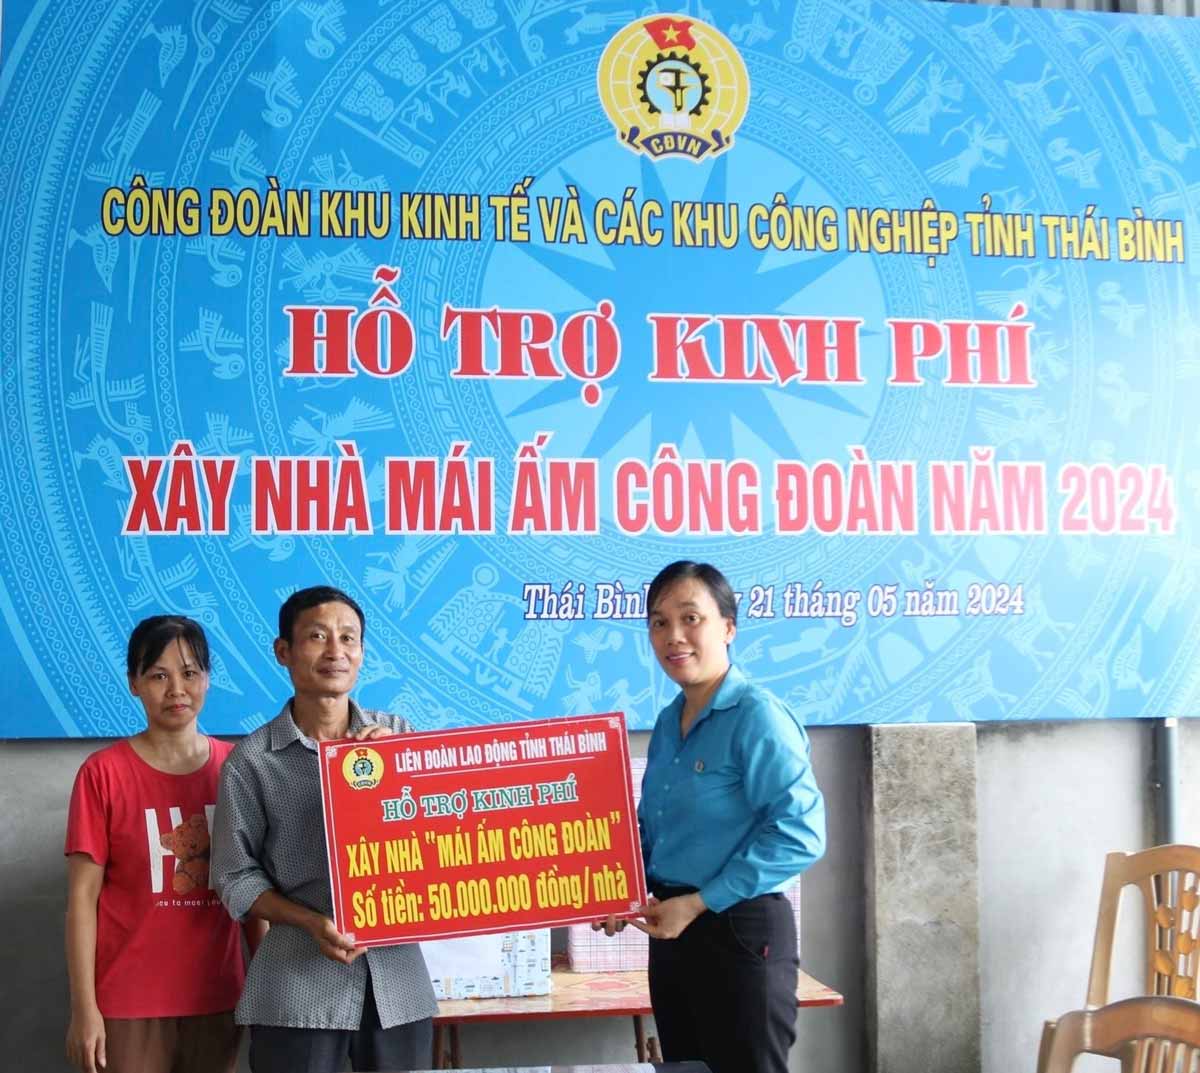 Lãnh đạo LĐLĐ tỉnh Thái Bình trao kinh phí hỗ trợ xây nhà Mái ấm Công đoàn cho đoàn viên Trần Đình Thuấn. Ảnh: Bá Mạnh